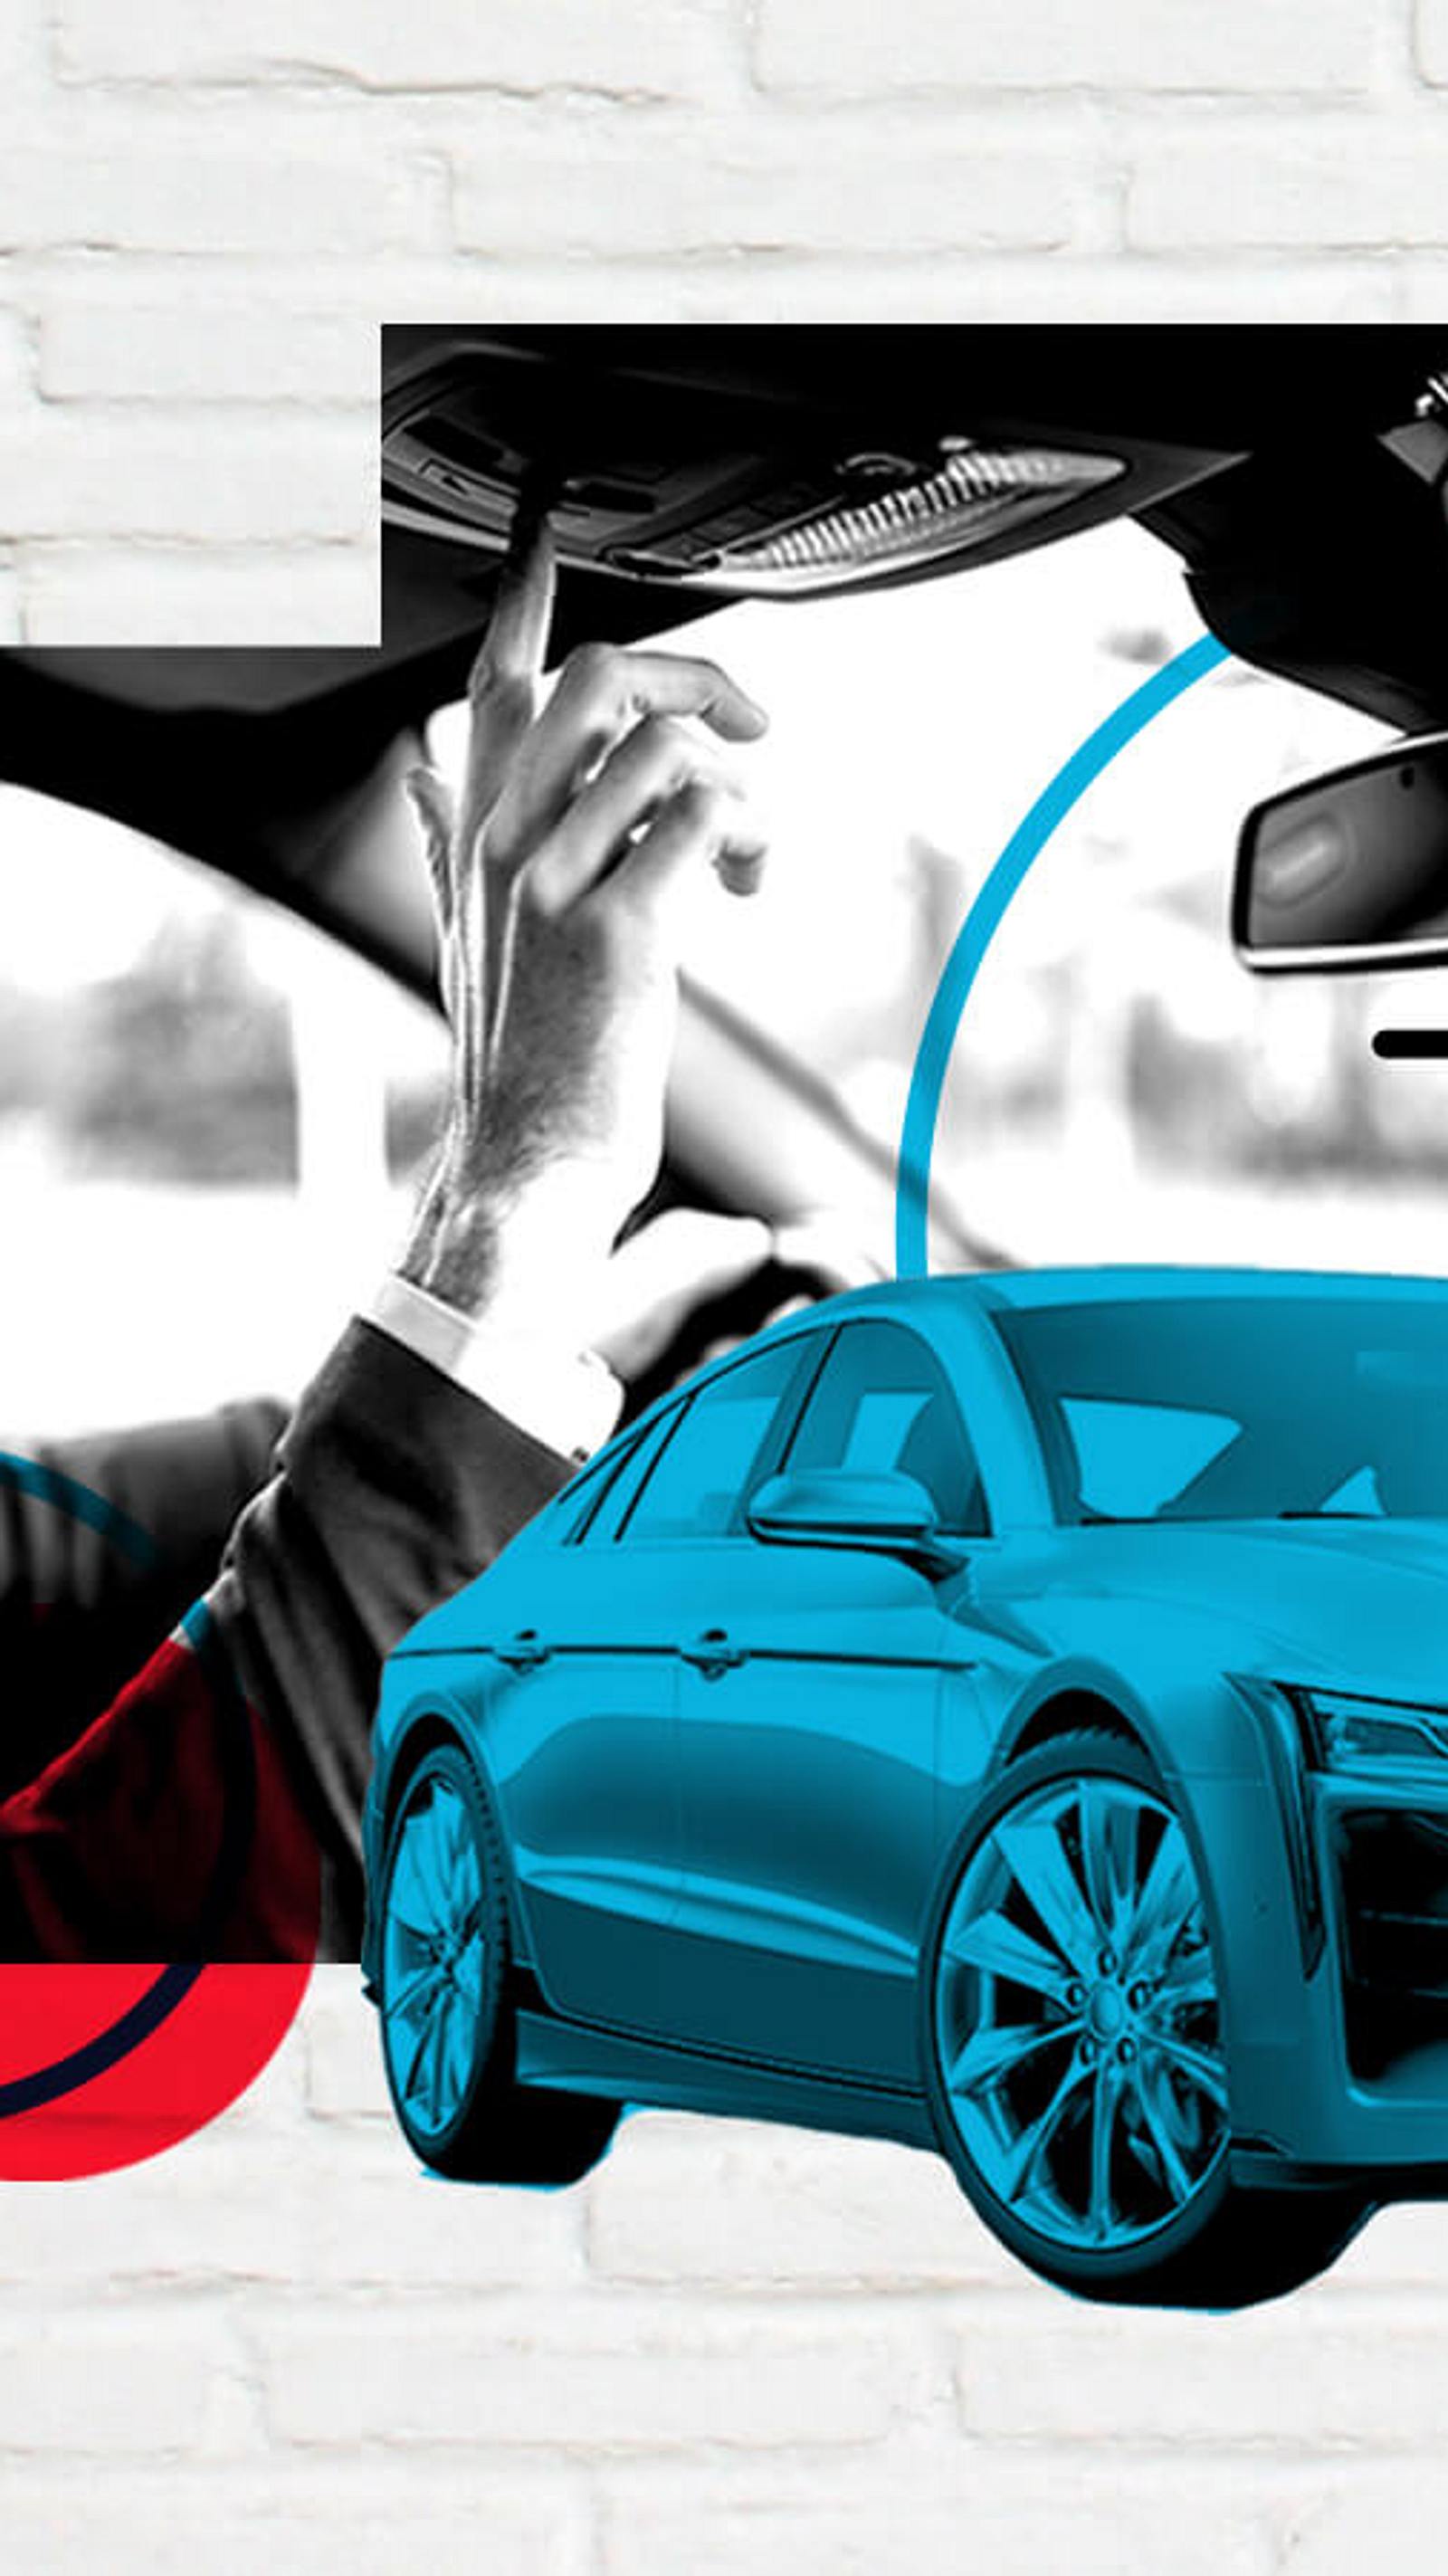 Bluetooth Freisprecheinrichtung fürs Auto – Die 15 besten Produkte im  Vergleich - Autolifestyle Ratgeber